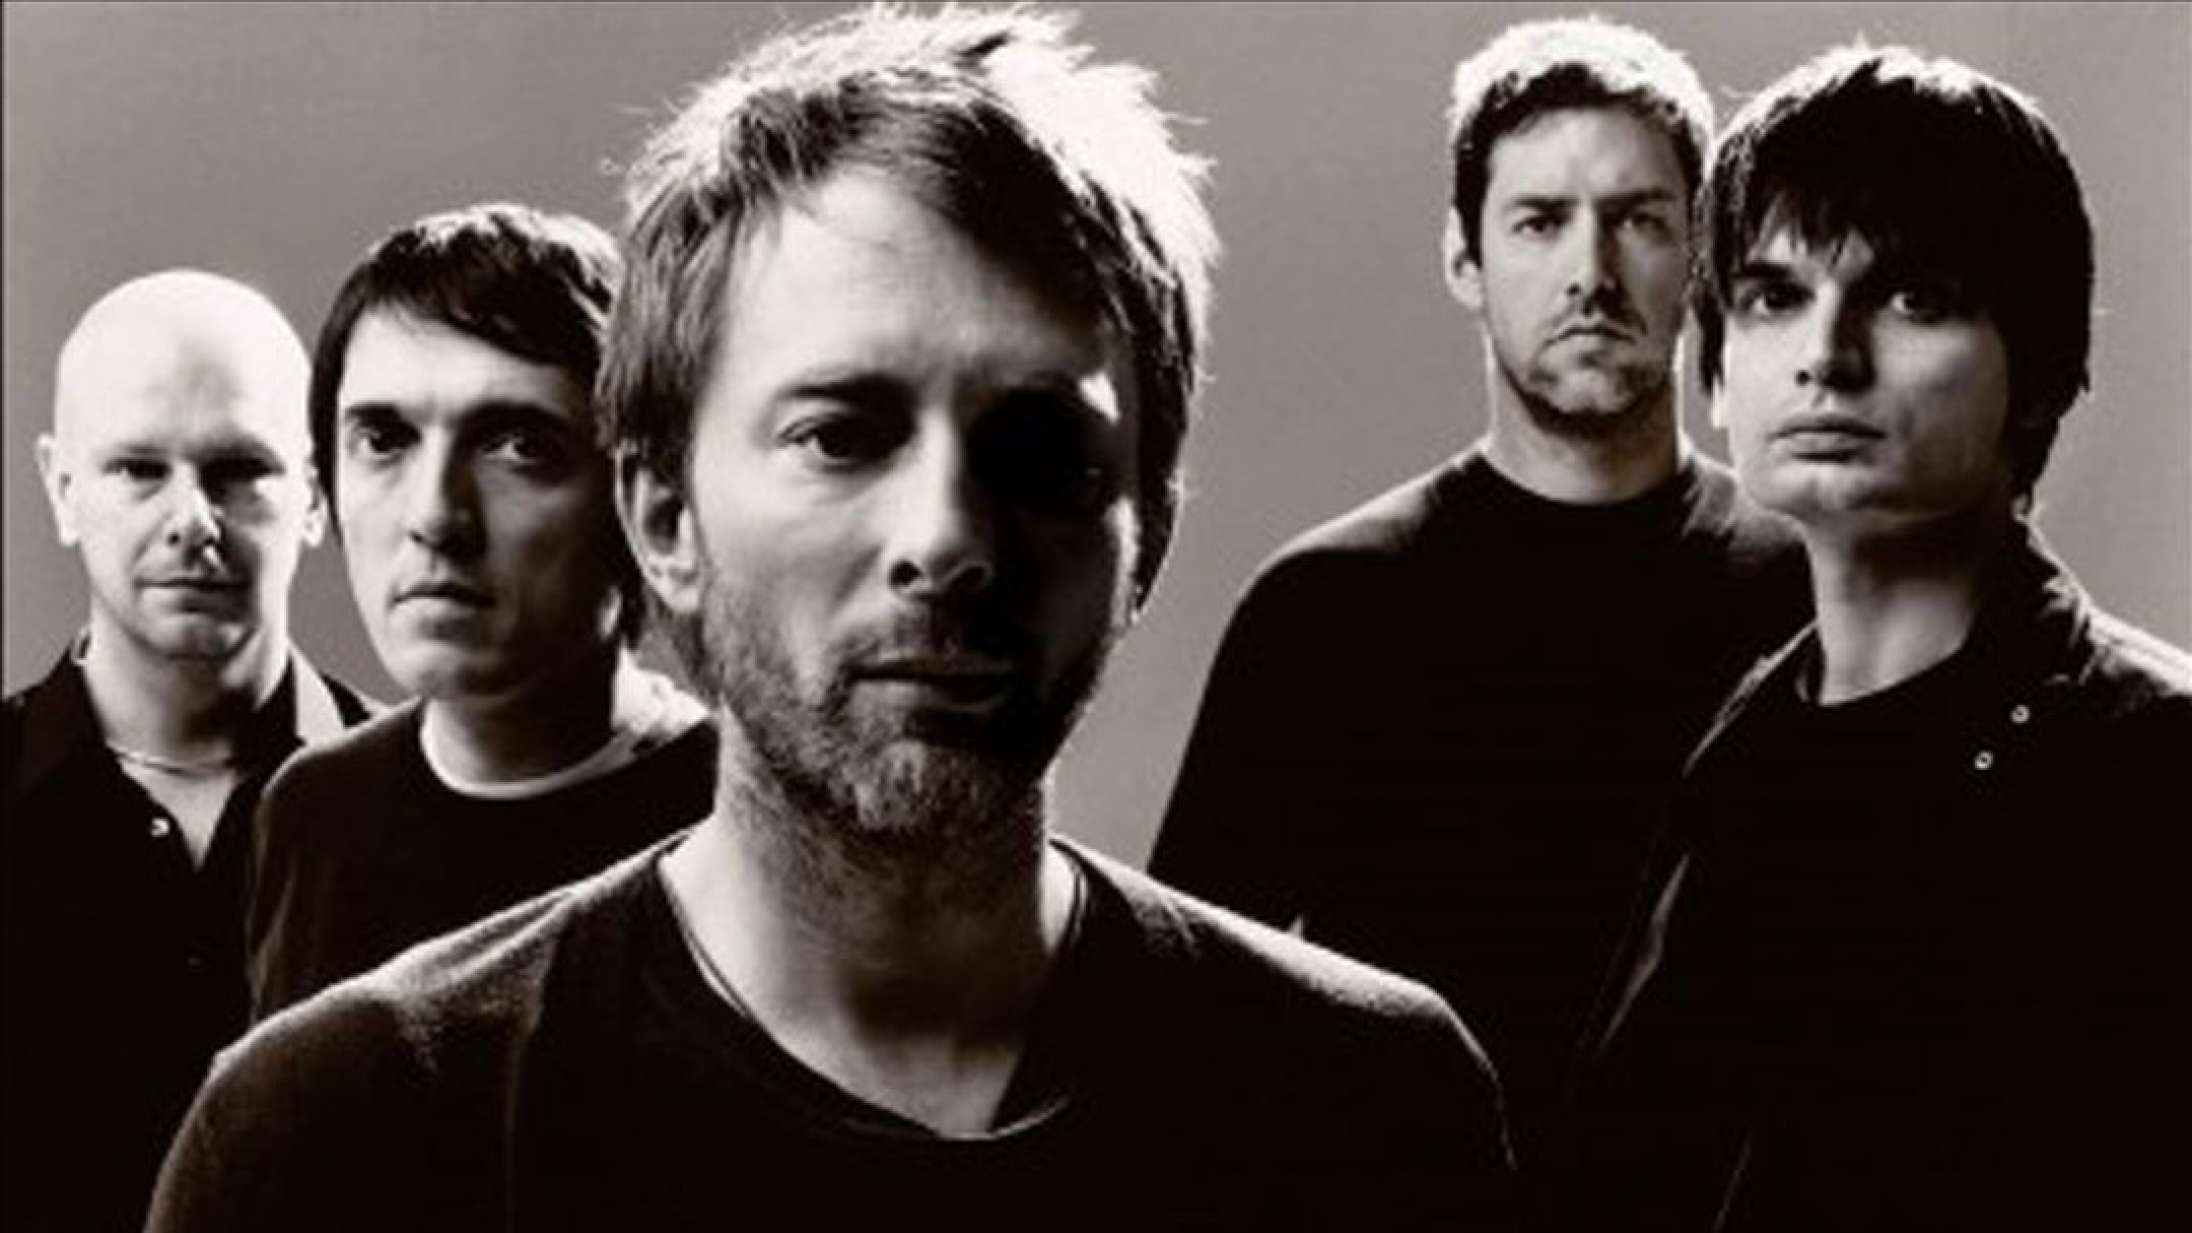 Radiohead-medlem teaser for genforening inden længe